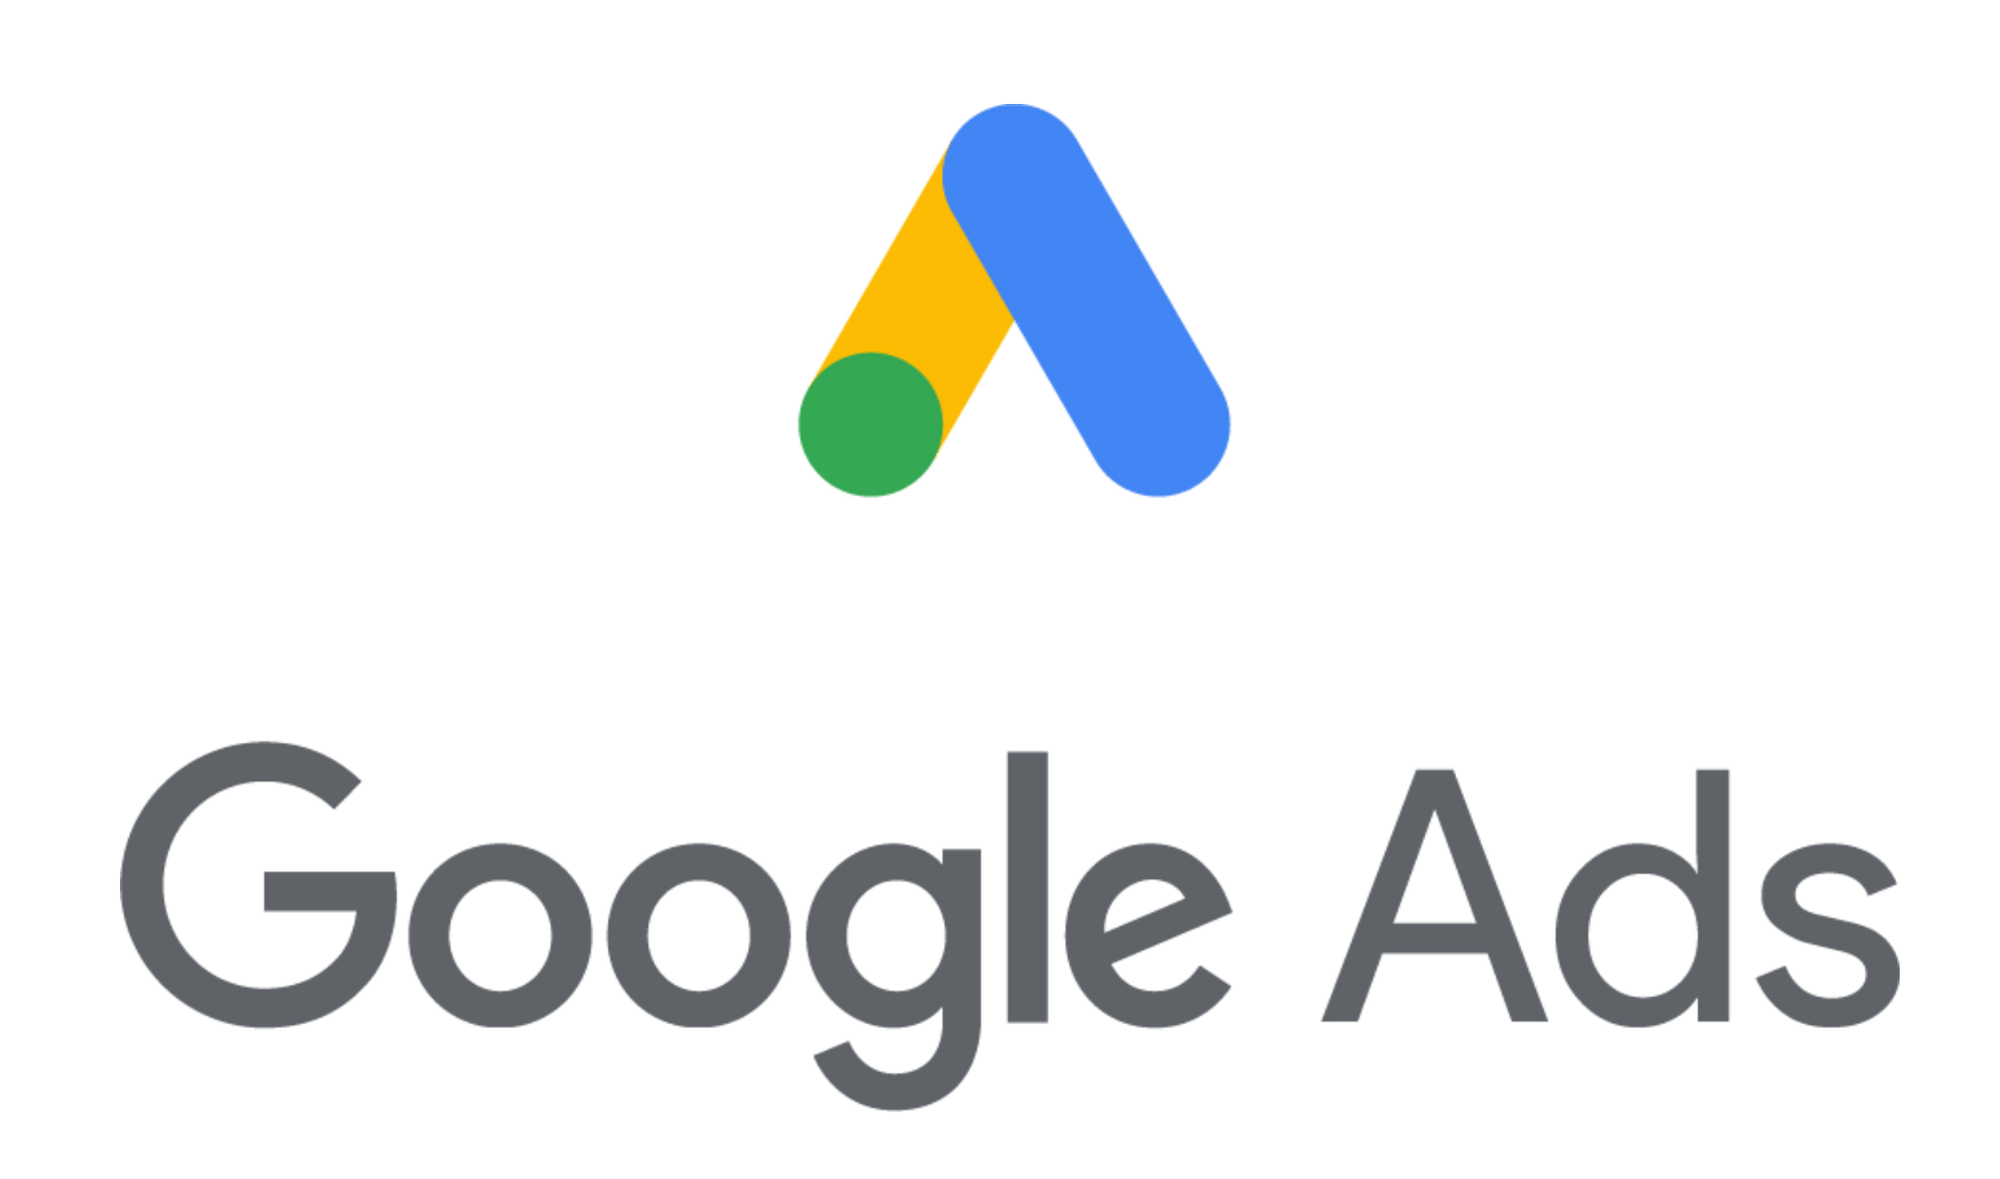 Logo von Google Ads